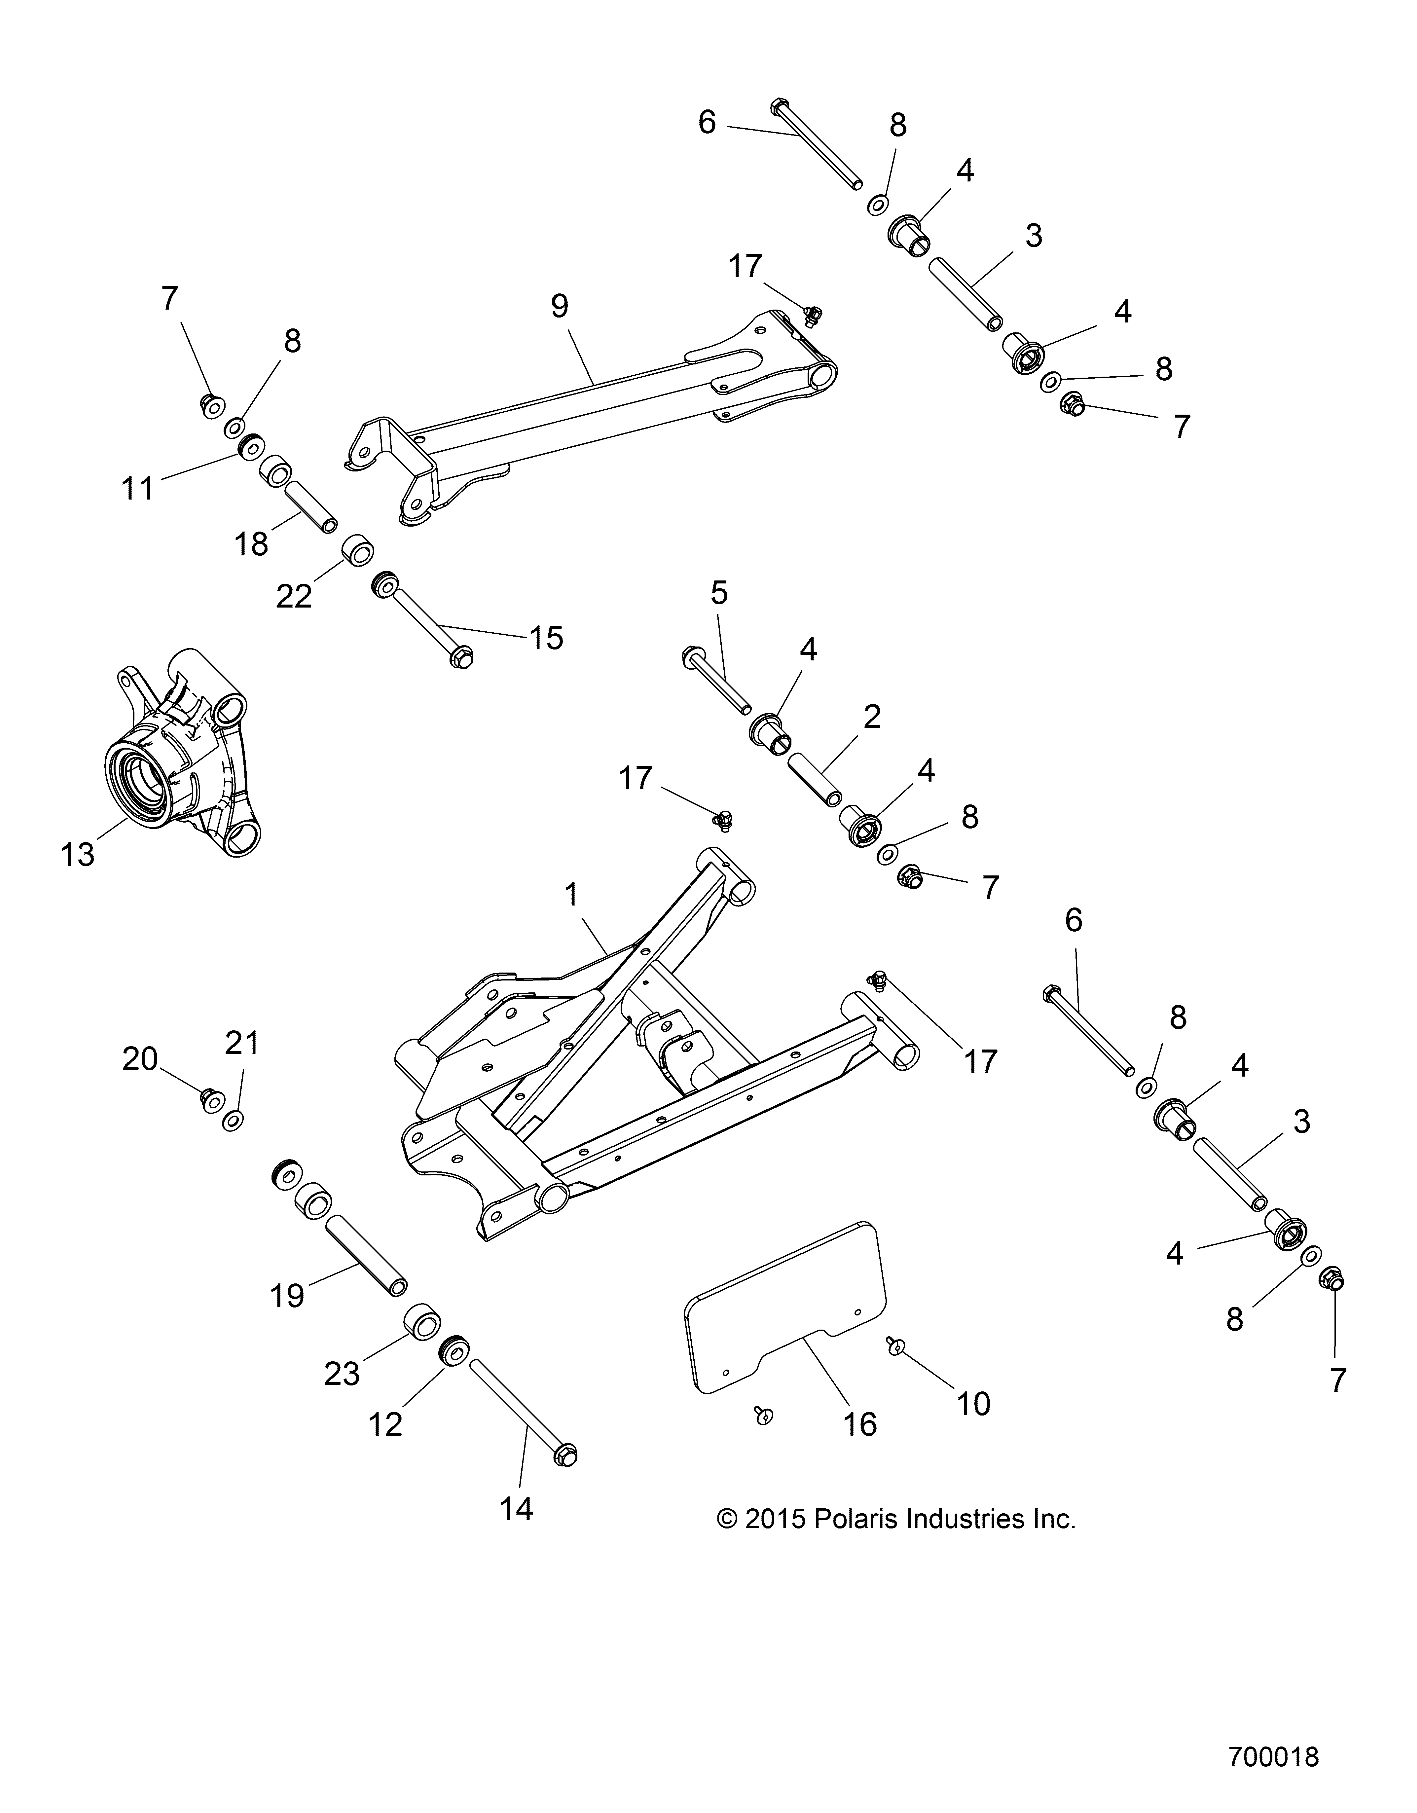 Foto diagrama Polaris que contem a peça 1021287-293